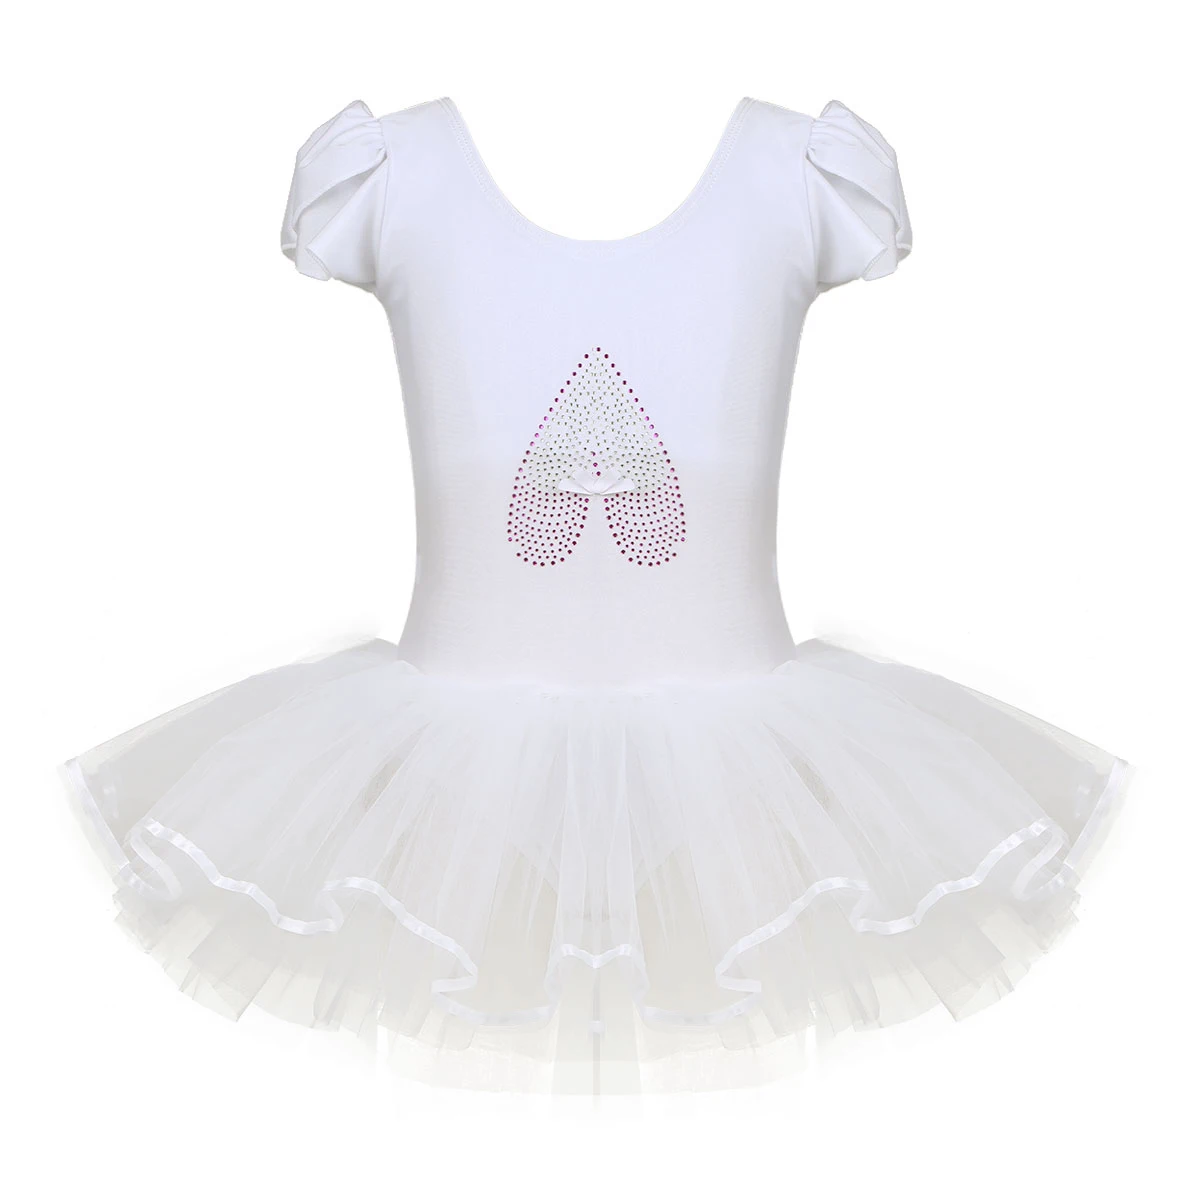 Iefiel для детей с рюшами для девочек; Кепки рукава Профессиональный Одежда для танцев с блестками обувь для балерин балетная танцевальная одежда для занятий гимнастикой, платье-пачка - Цвет: Ivory